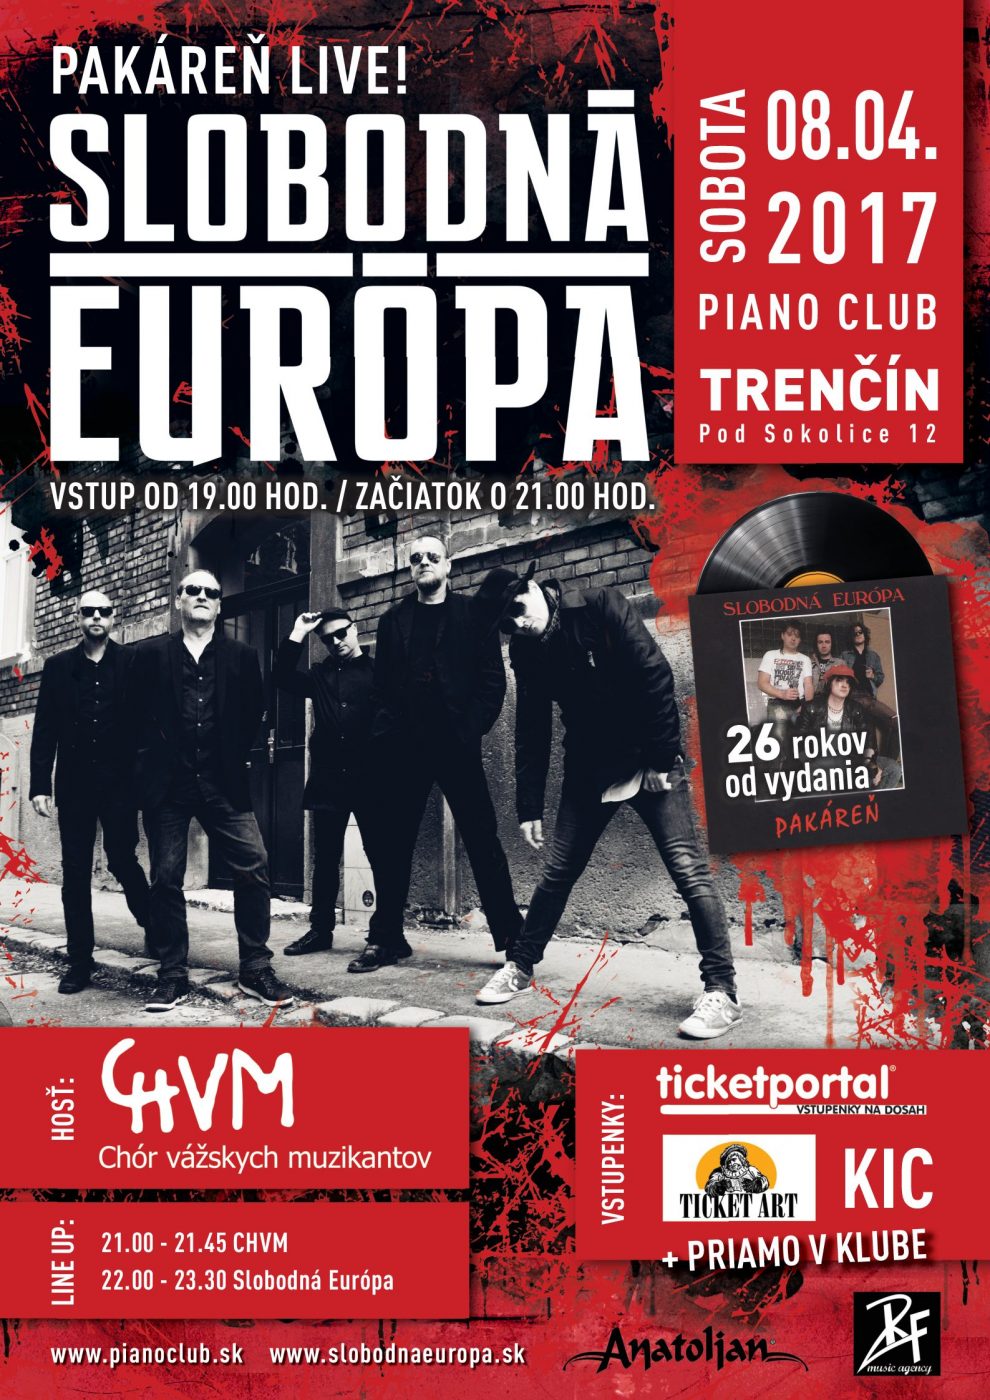 Skupinu Slobodná Európa v roku 2017 čakajú na jar tri koncerty s programom „Pakáreň Live!“, v lete pár festivalov,na jeseň koncert v Londýne a minitour s kapelou Para BOMBING 4